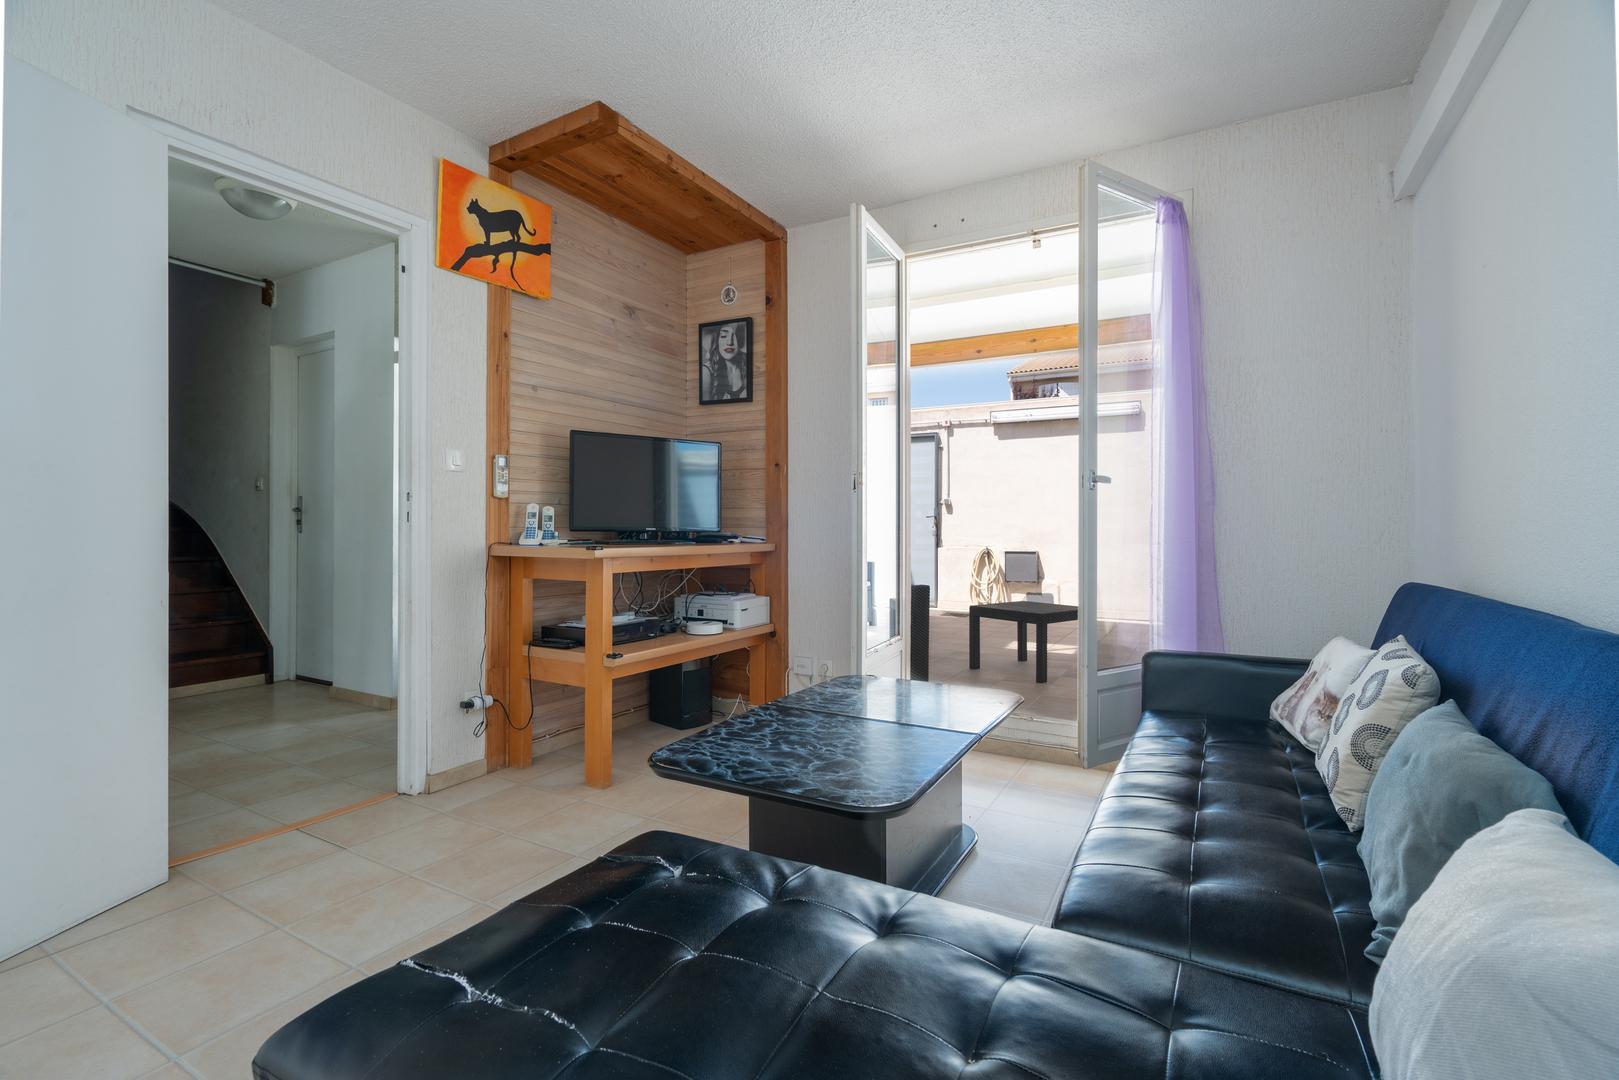 Homki - Vente Maison/villa  de 84.0 m² à Béziers 34500